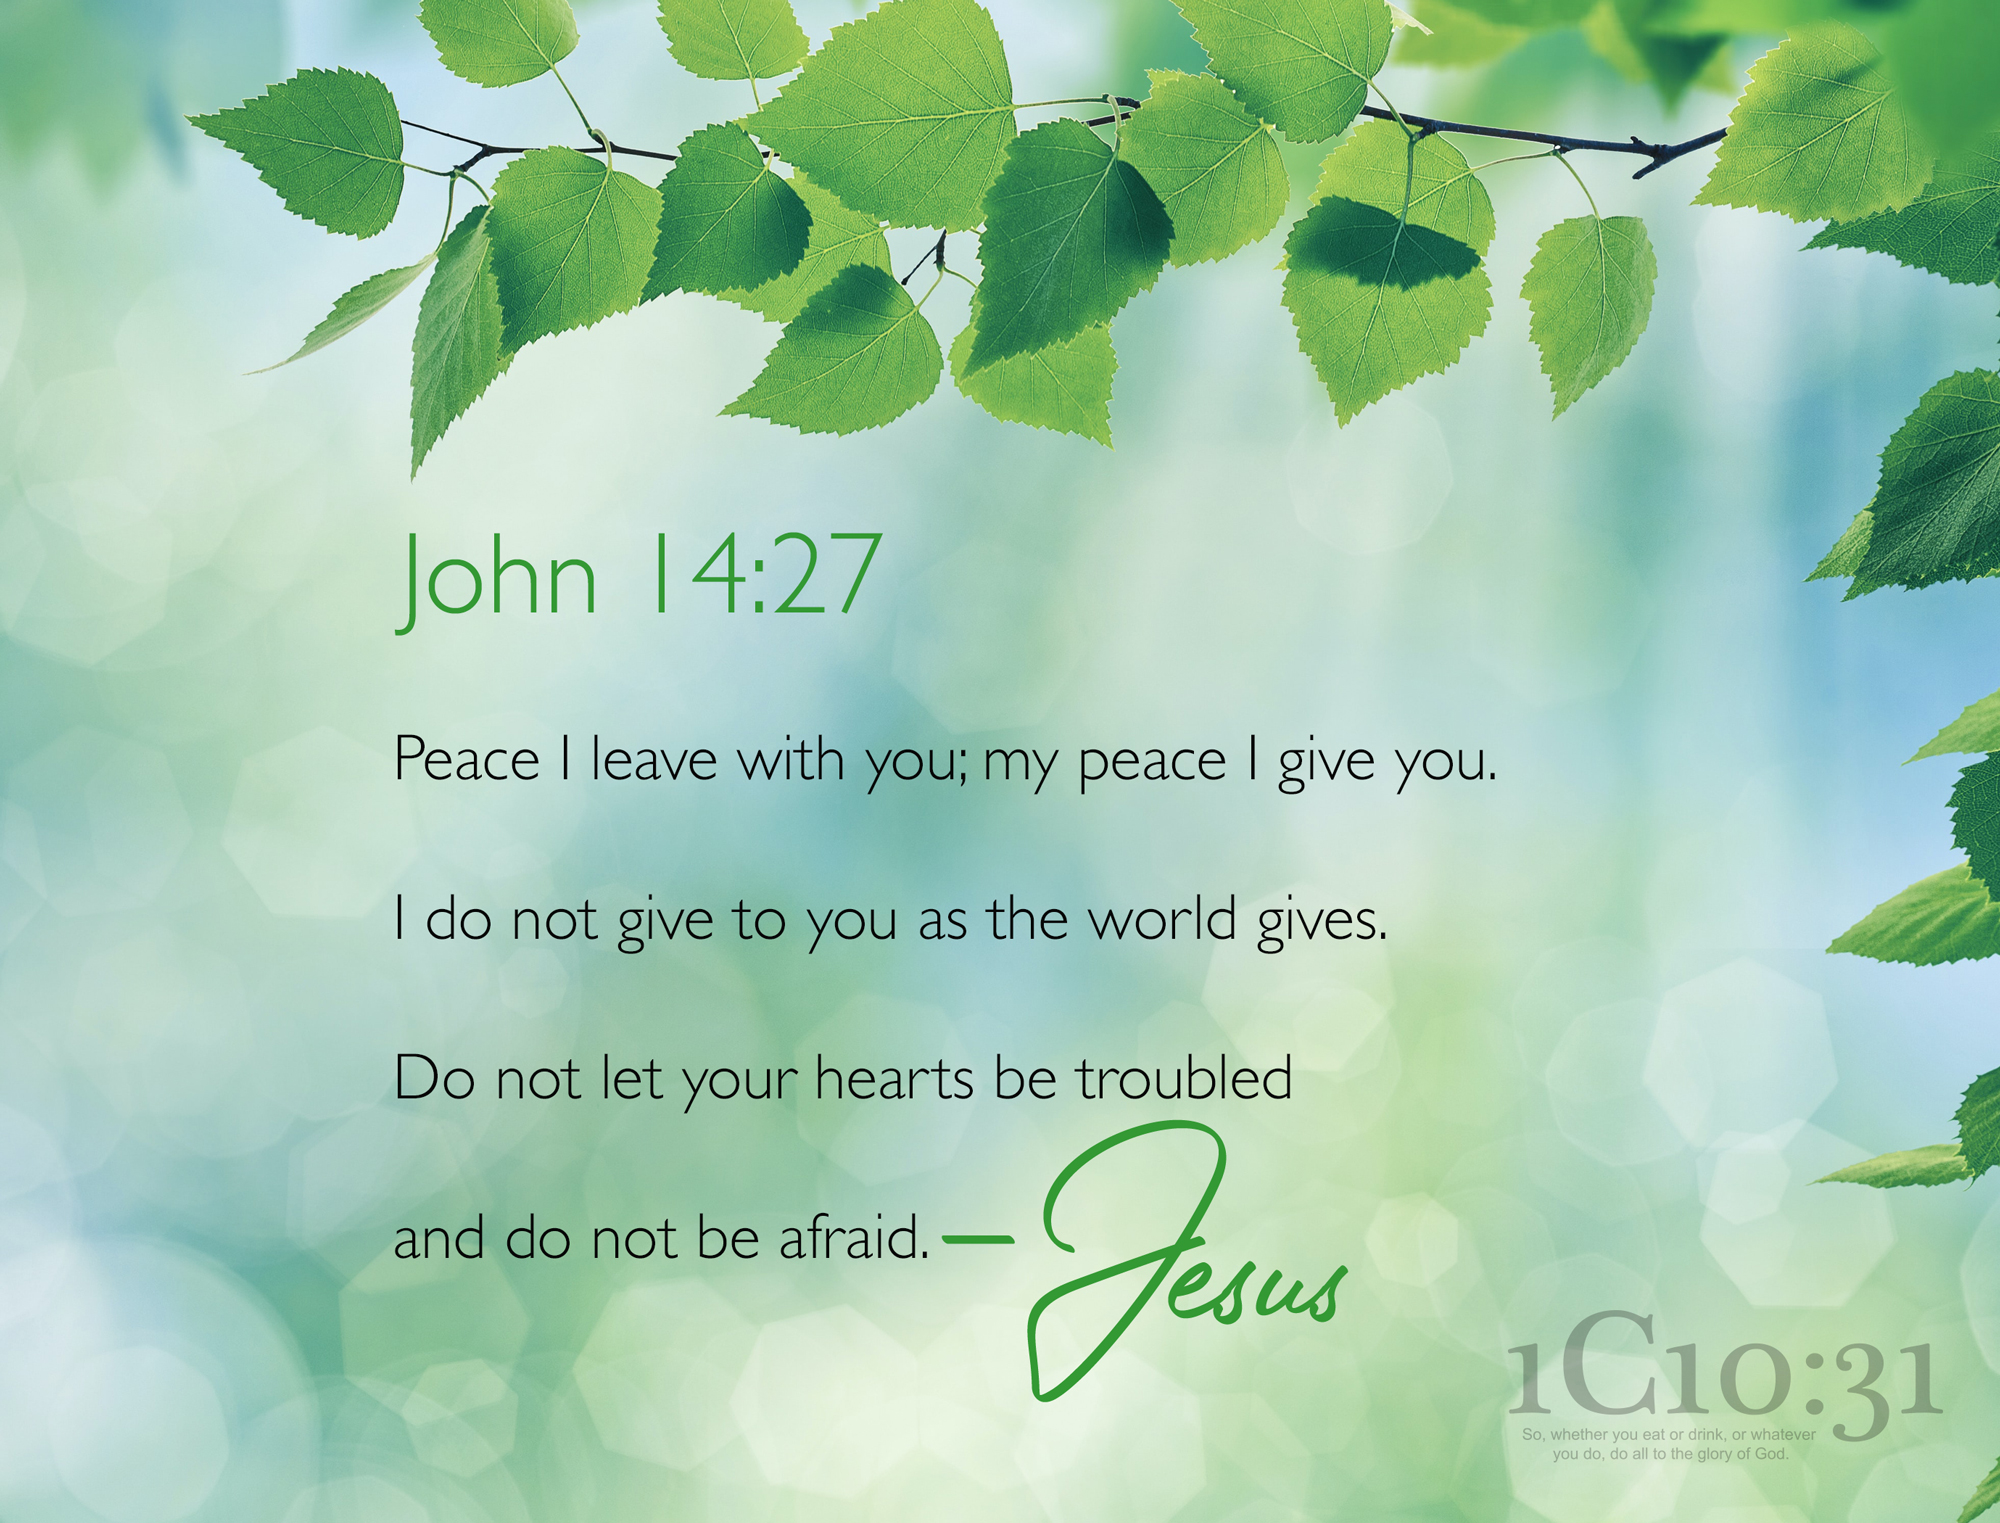 John 14:15-31